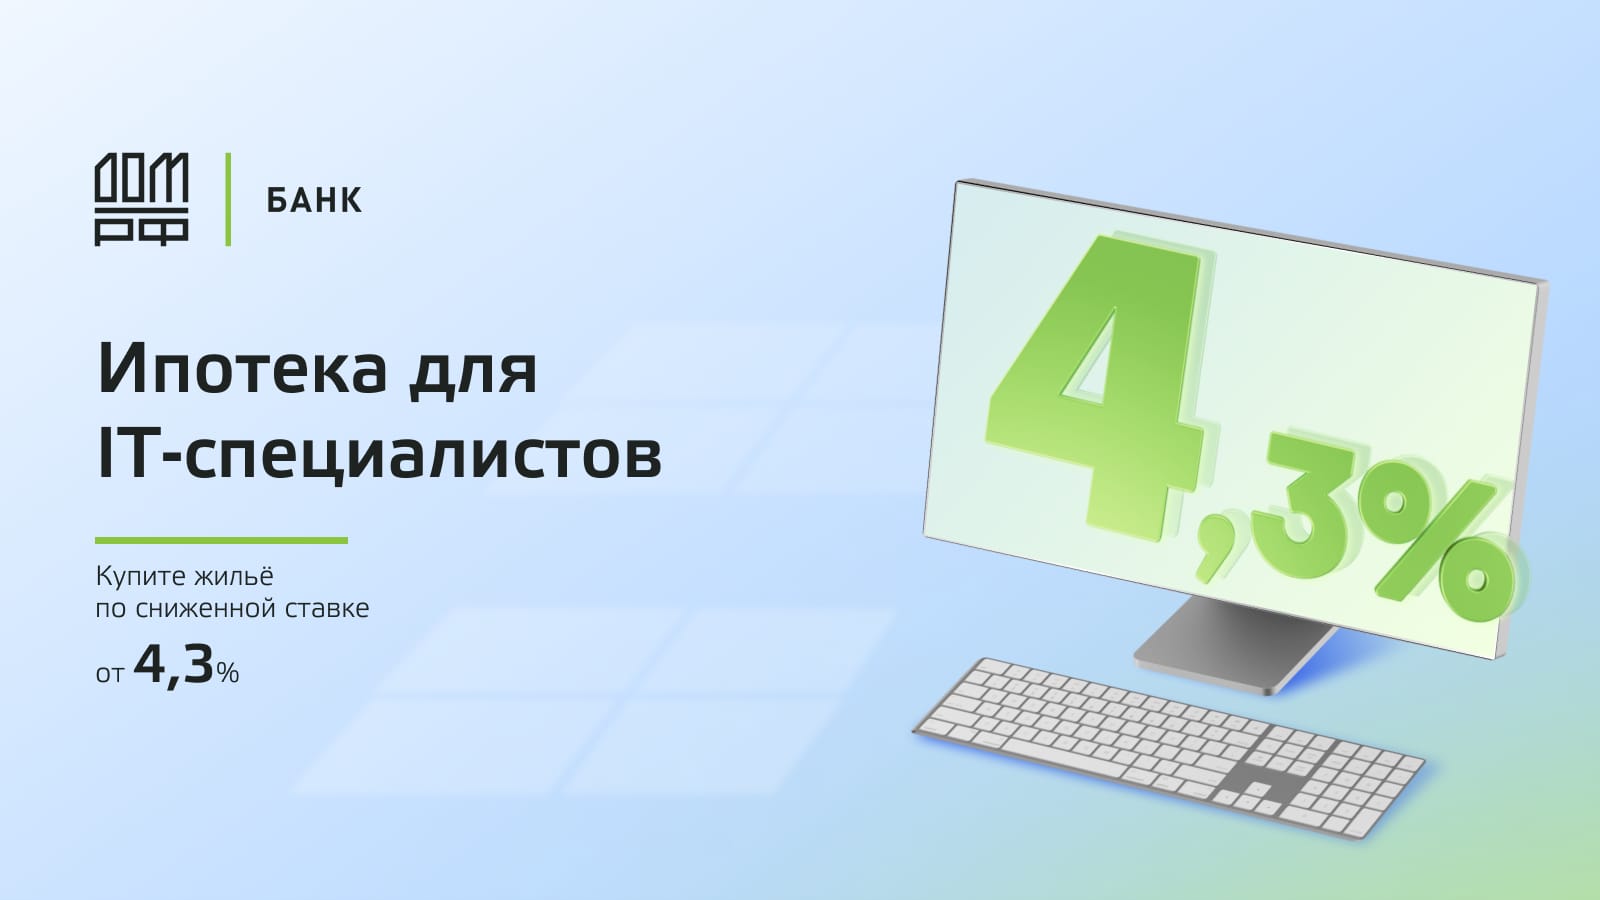 Ипотека от 4,3% для IT-специалистов на строительство дома от банка ДОМ.РФ